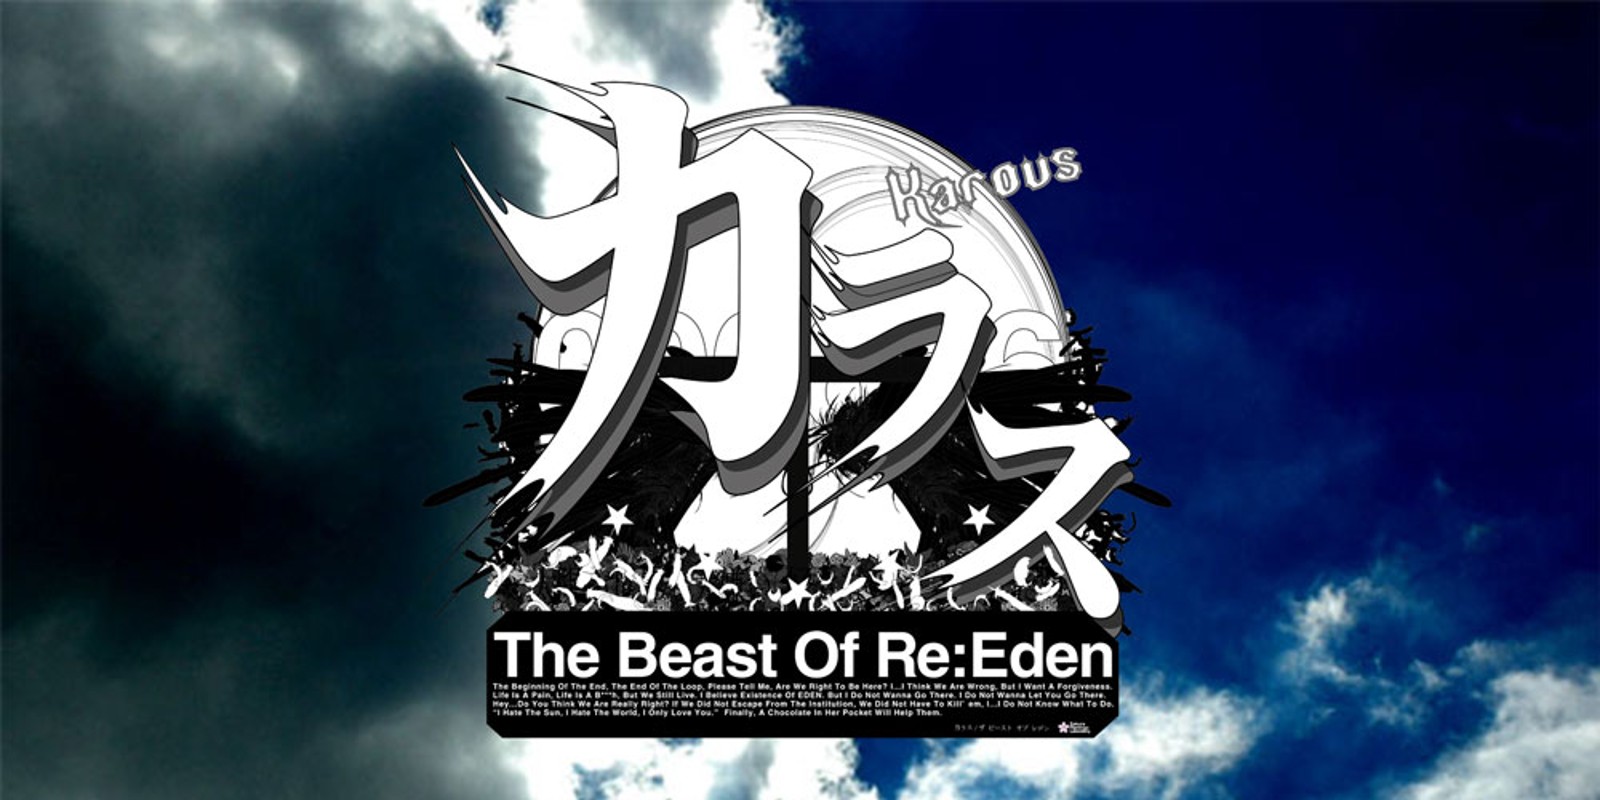 Karous - The Beast Of Re:Eden - | Nintendo 3DS download software 